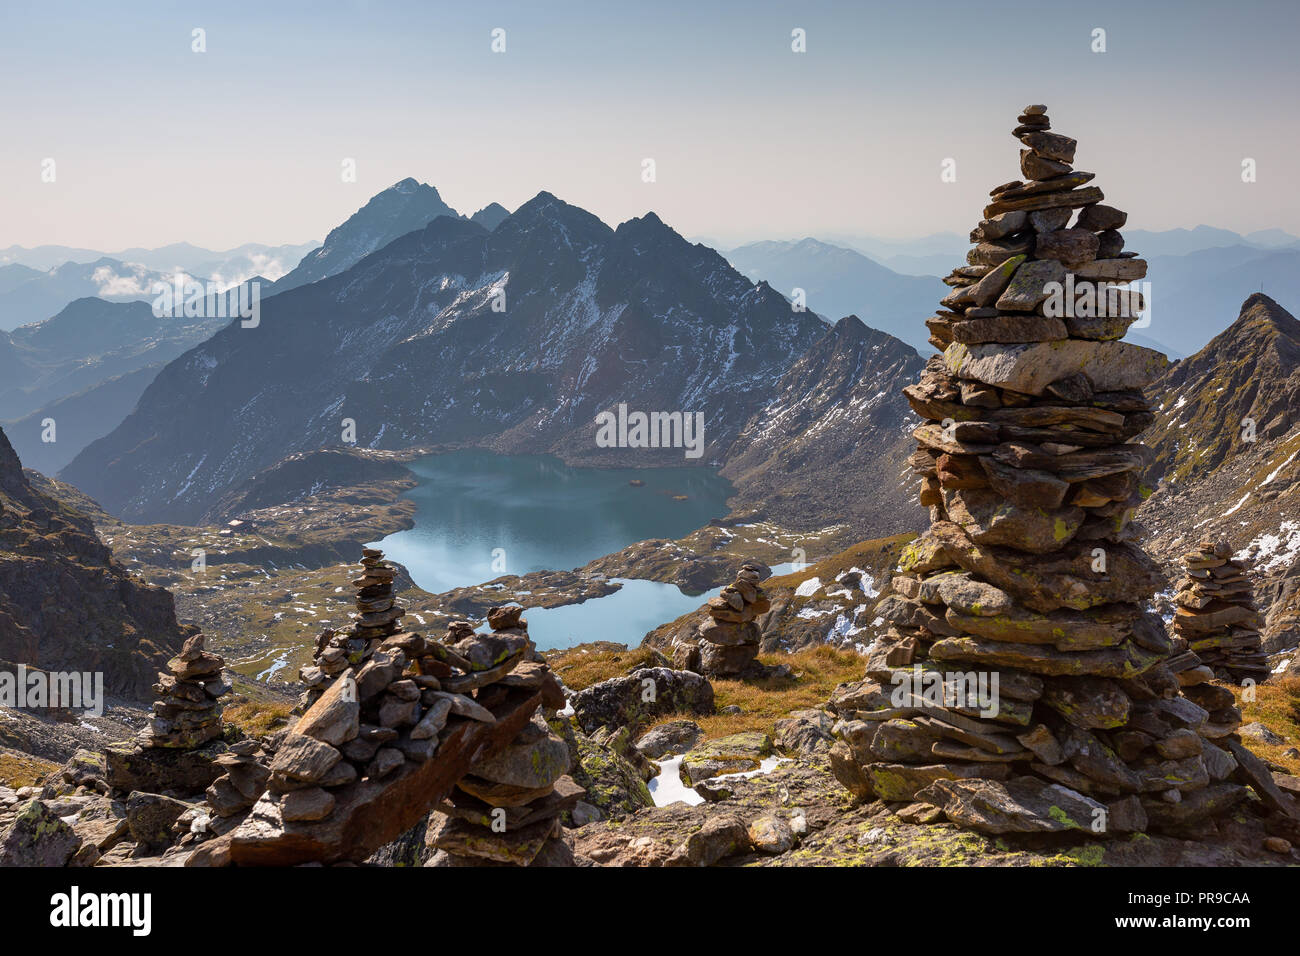 Piramide di pietre e paesaggio di montagna. Wangenitzsee lago alpino. Schobergruppe gruppo montuoso. Hohe Tauern Nationalpark. La Carinzia. Austria. Foto Stock